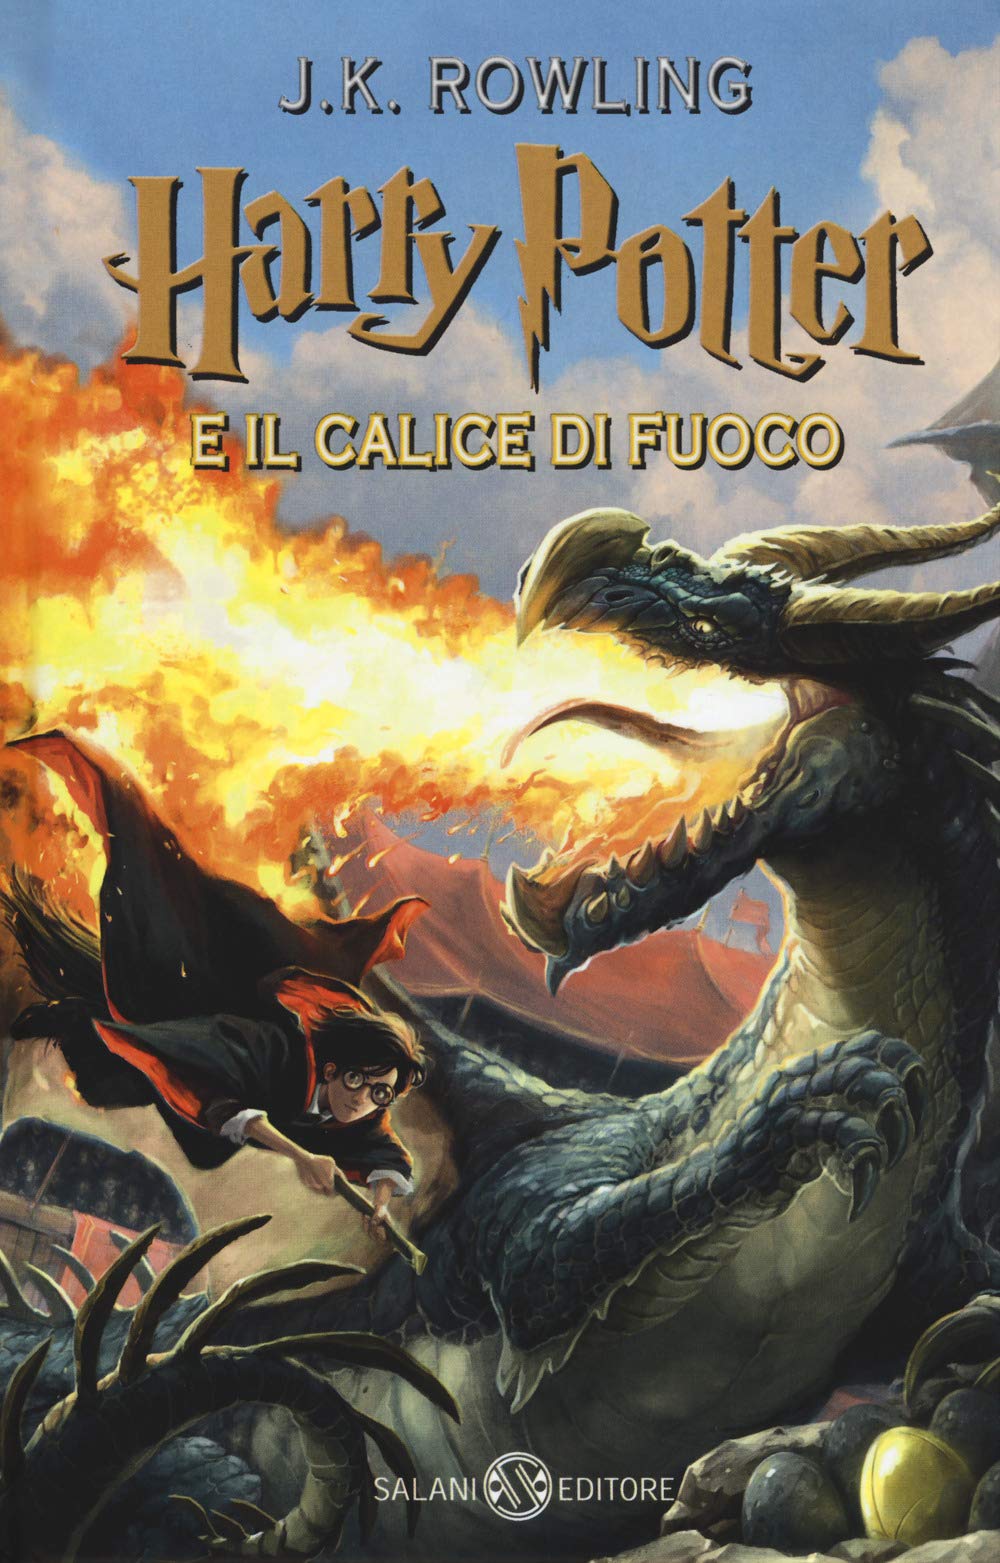 Harry Potter e il calice di fuoco, copertina